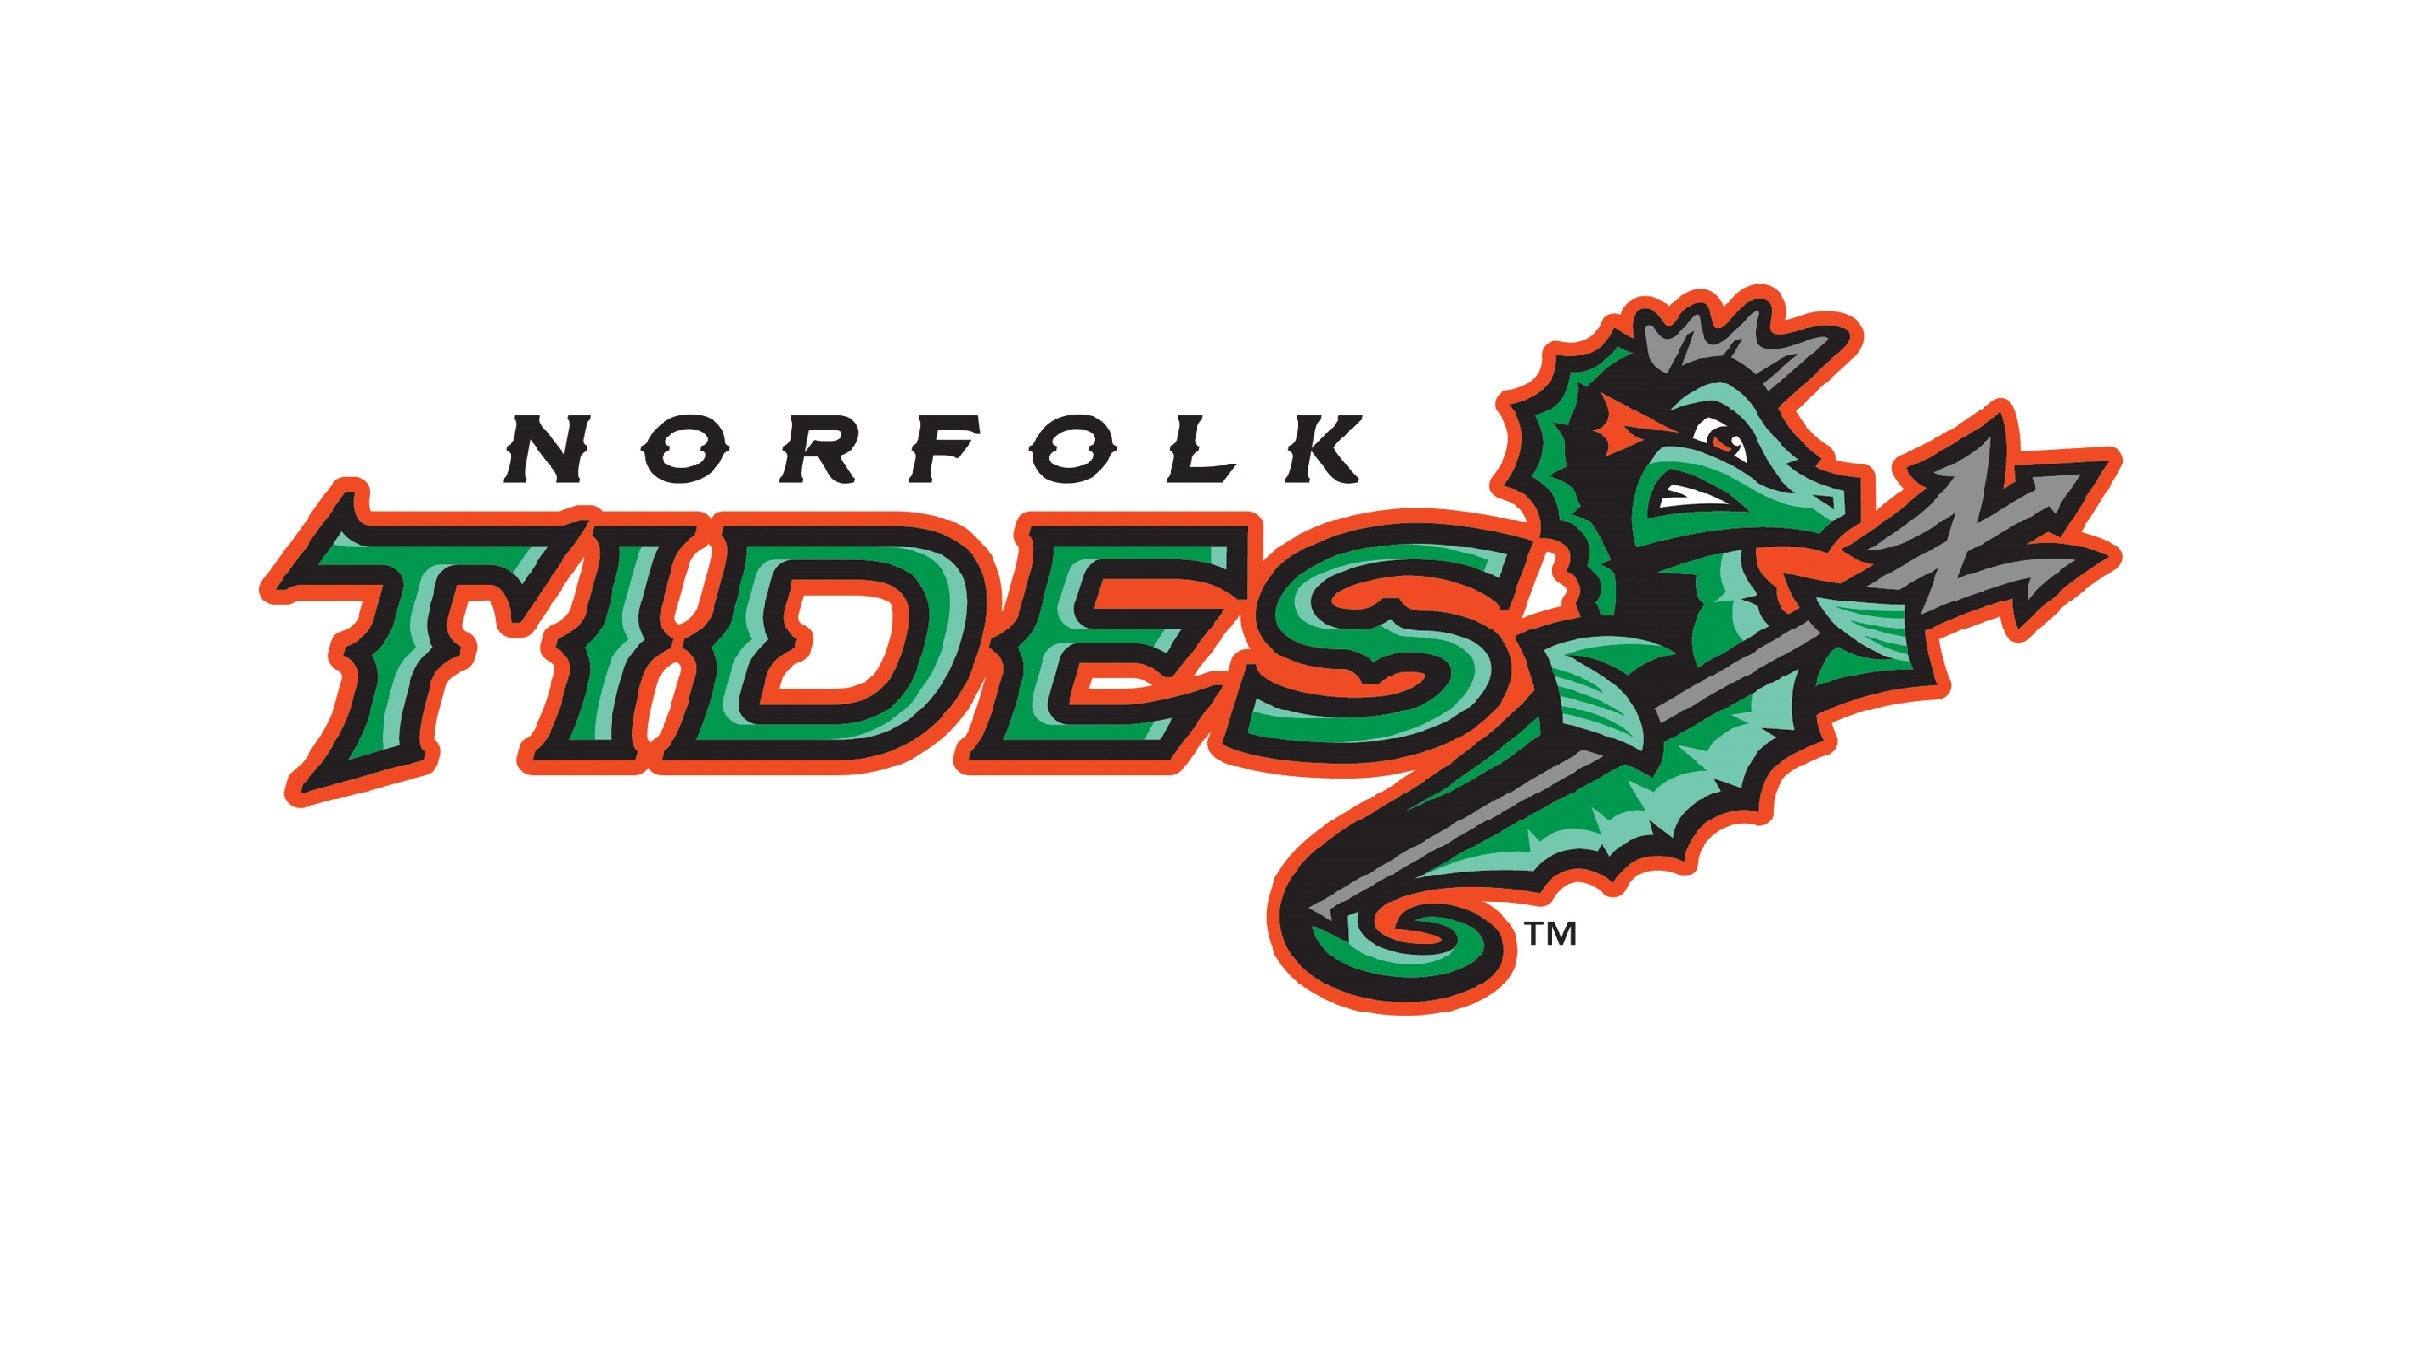 Norfolk Tides vs. Lehigh Valley IronPigs at Harbor Park